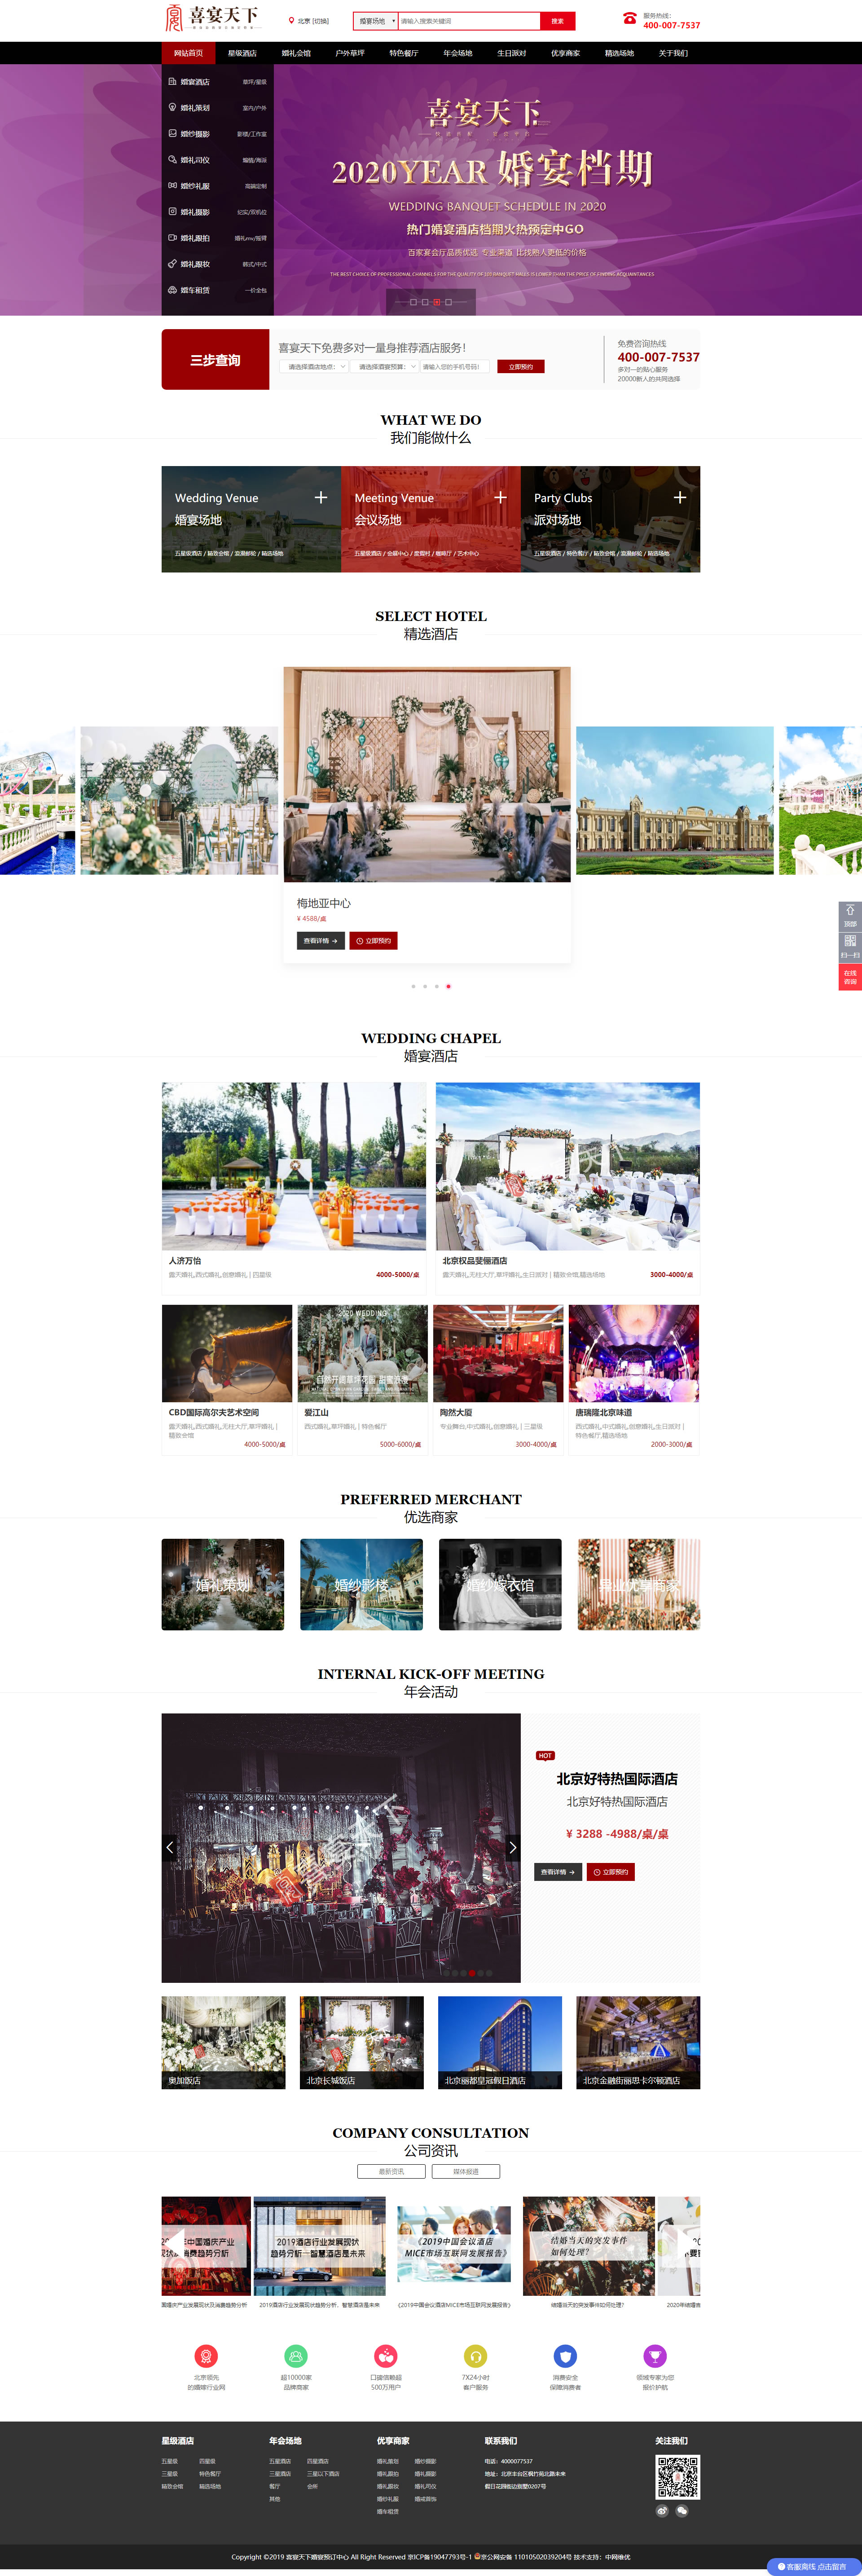 婚宴网站建设与网站设计案例